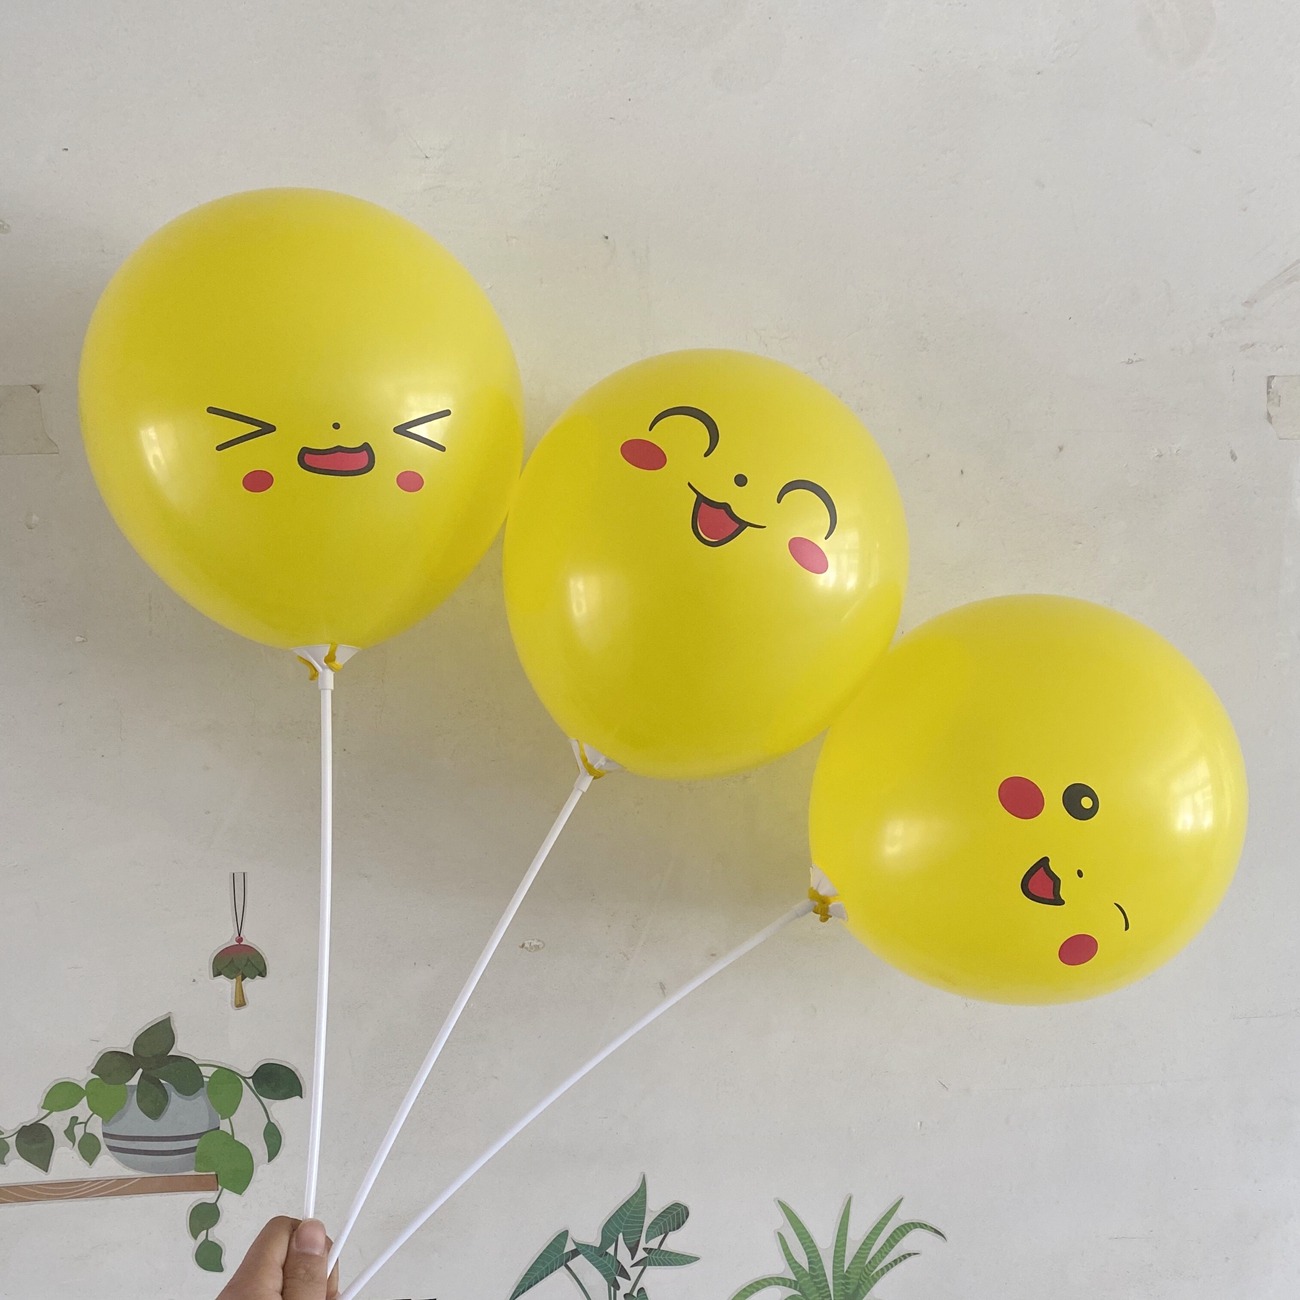 黄色皮卡丘气球表情包卡通可爱儿童派对生日装饰礼品活动定制印字